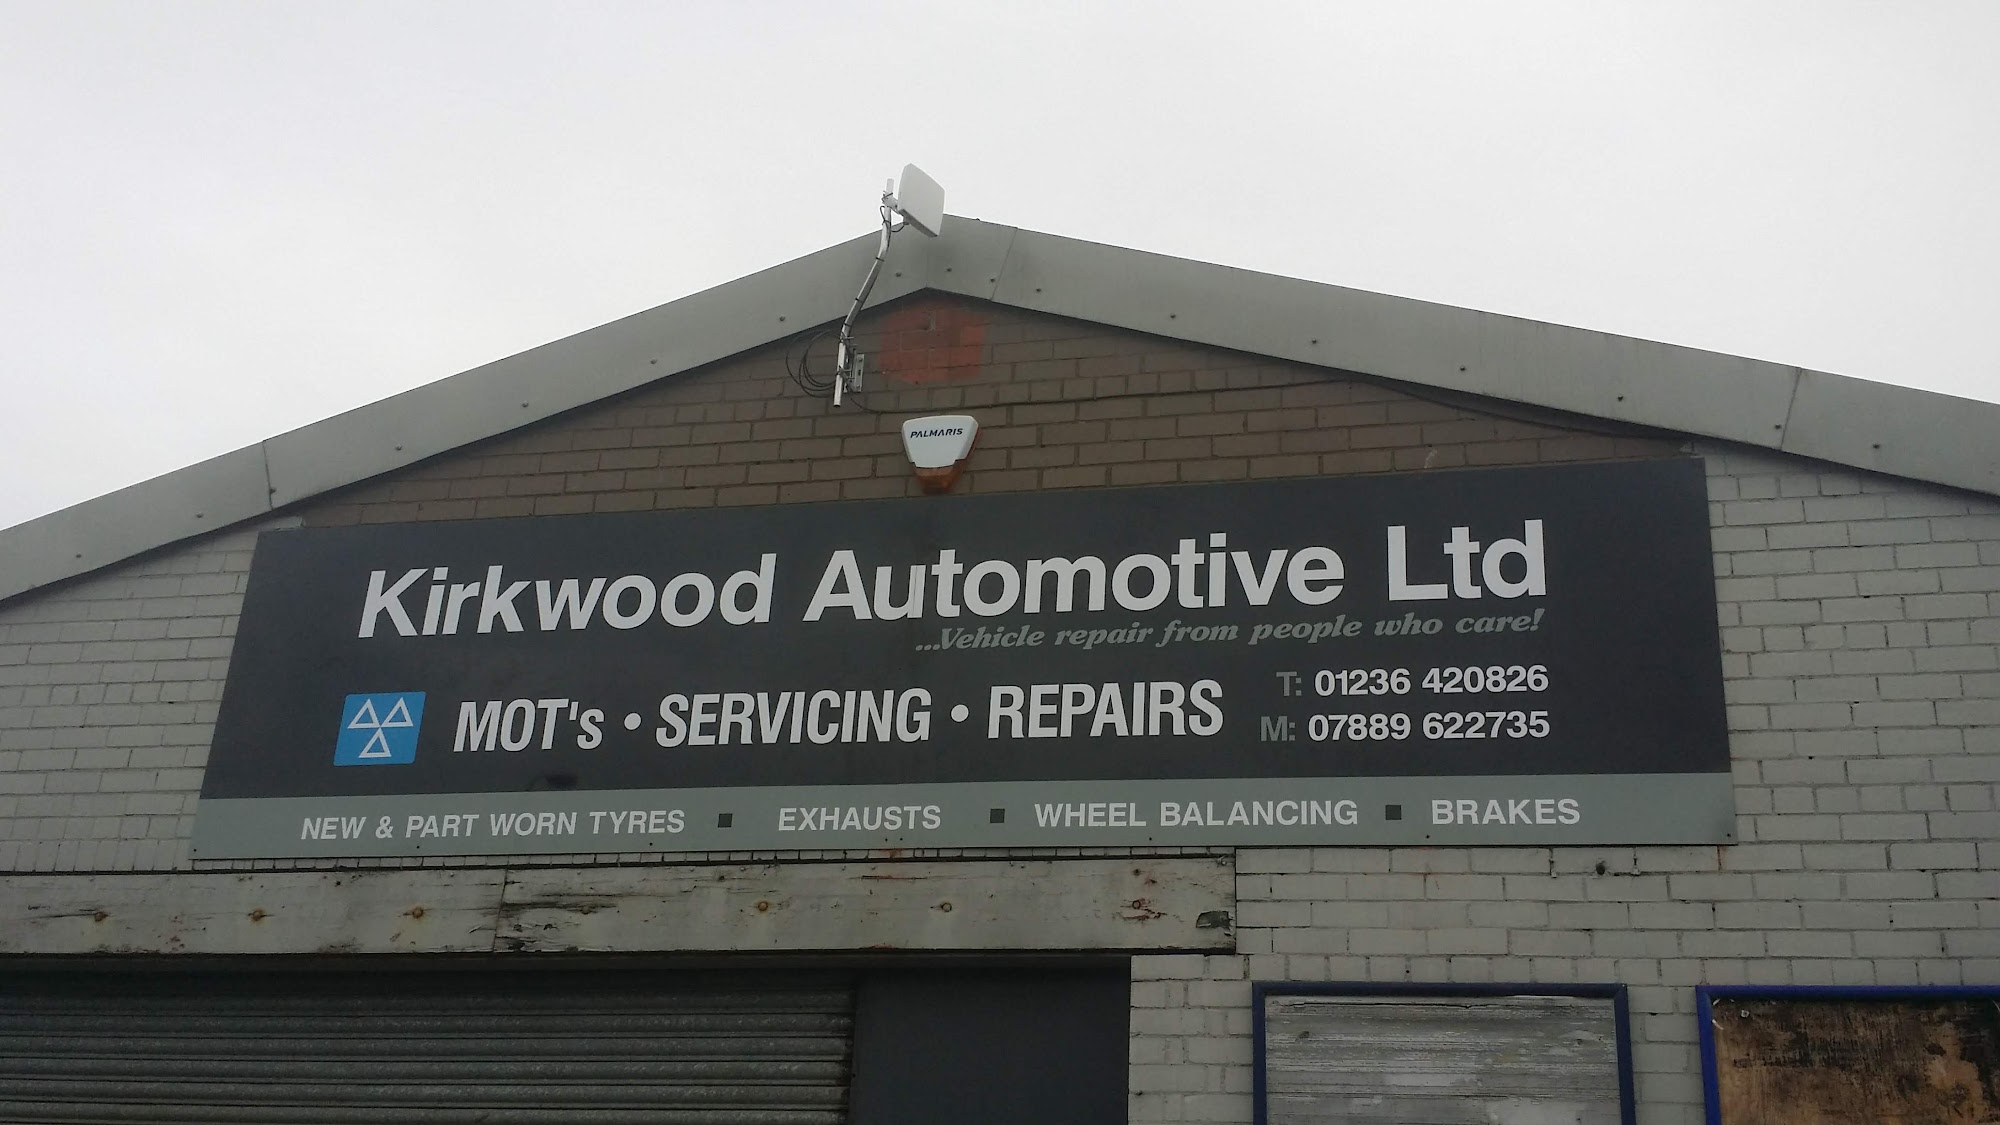 Kirkwood Automotive Ltd